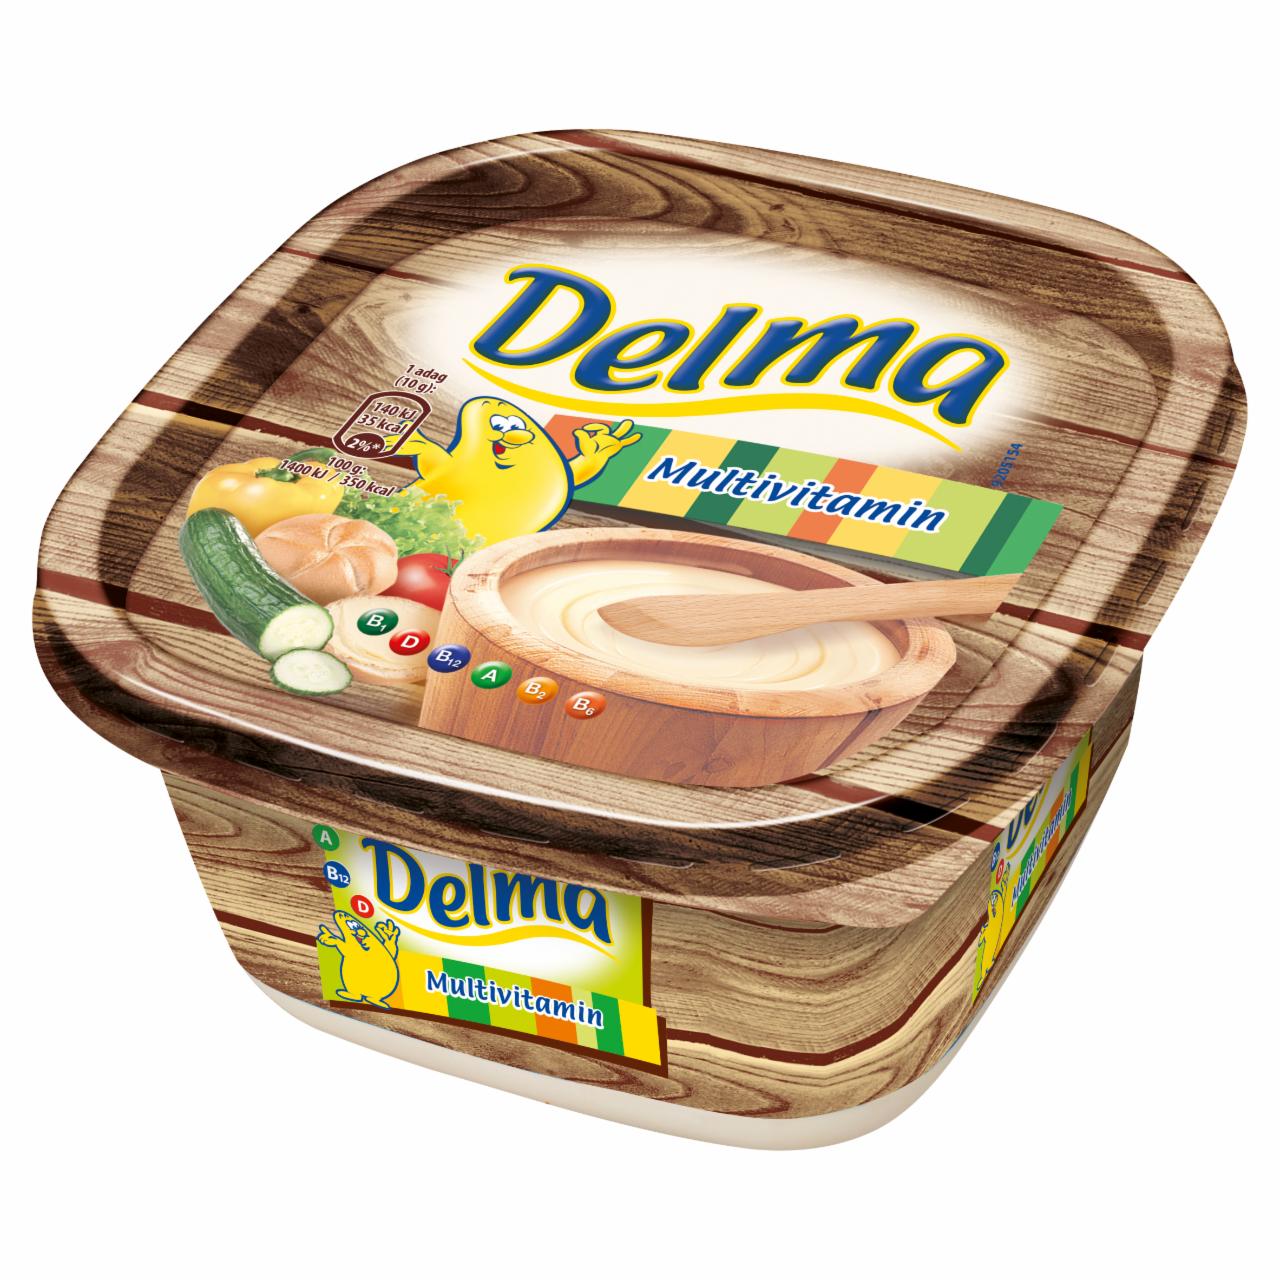 Képek - Delma Multivitamin light csészés margarin 500 g